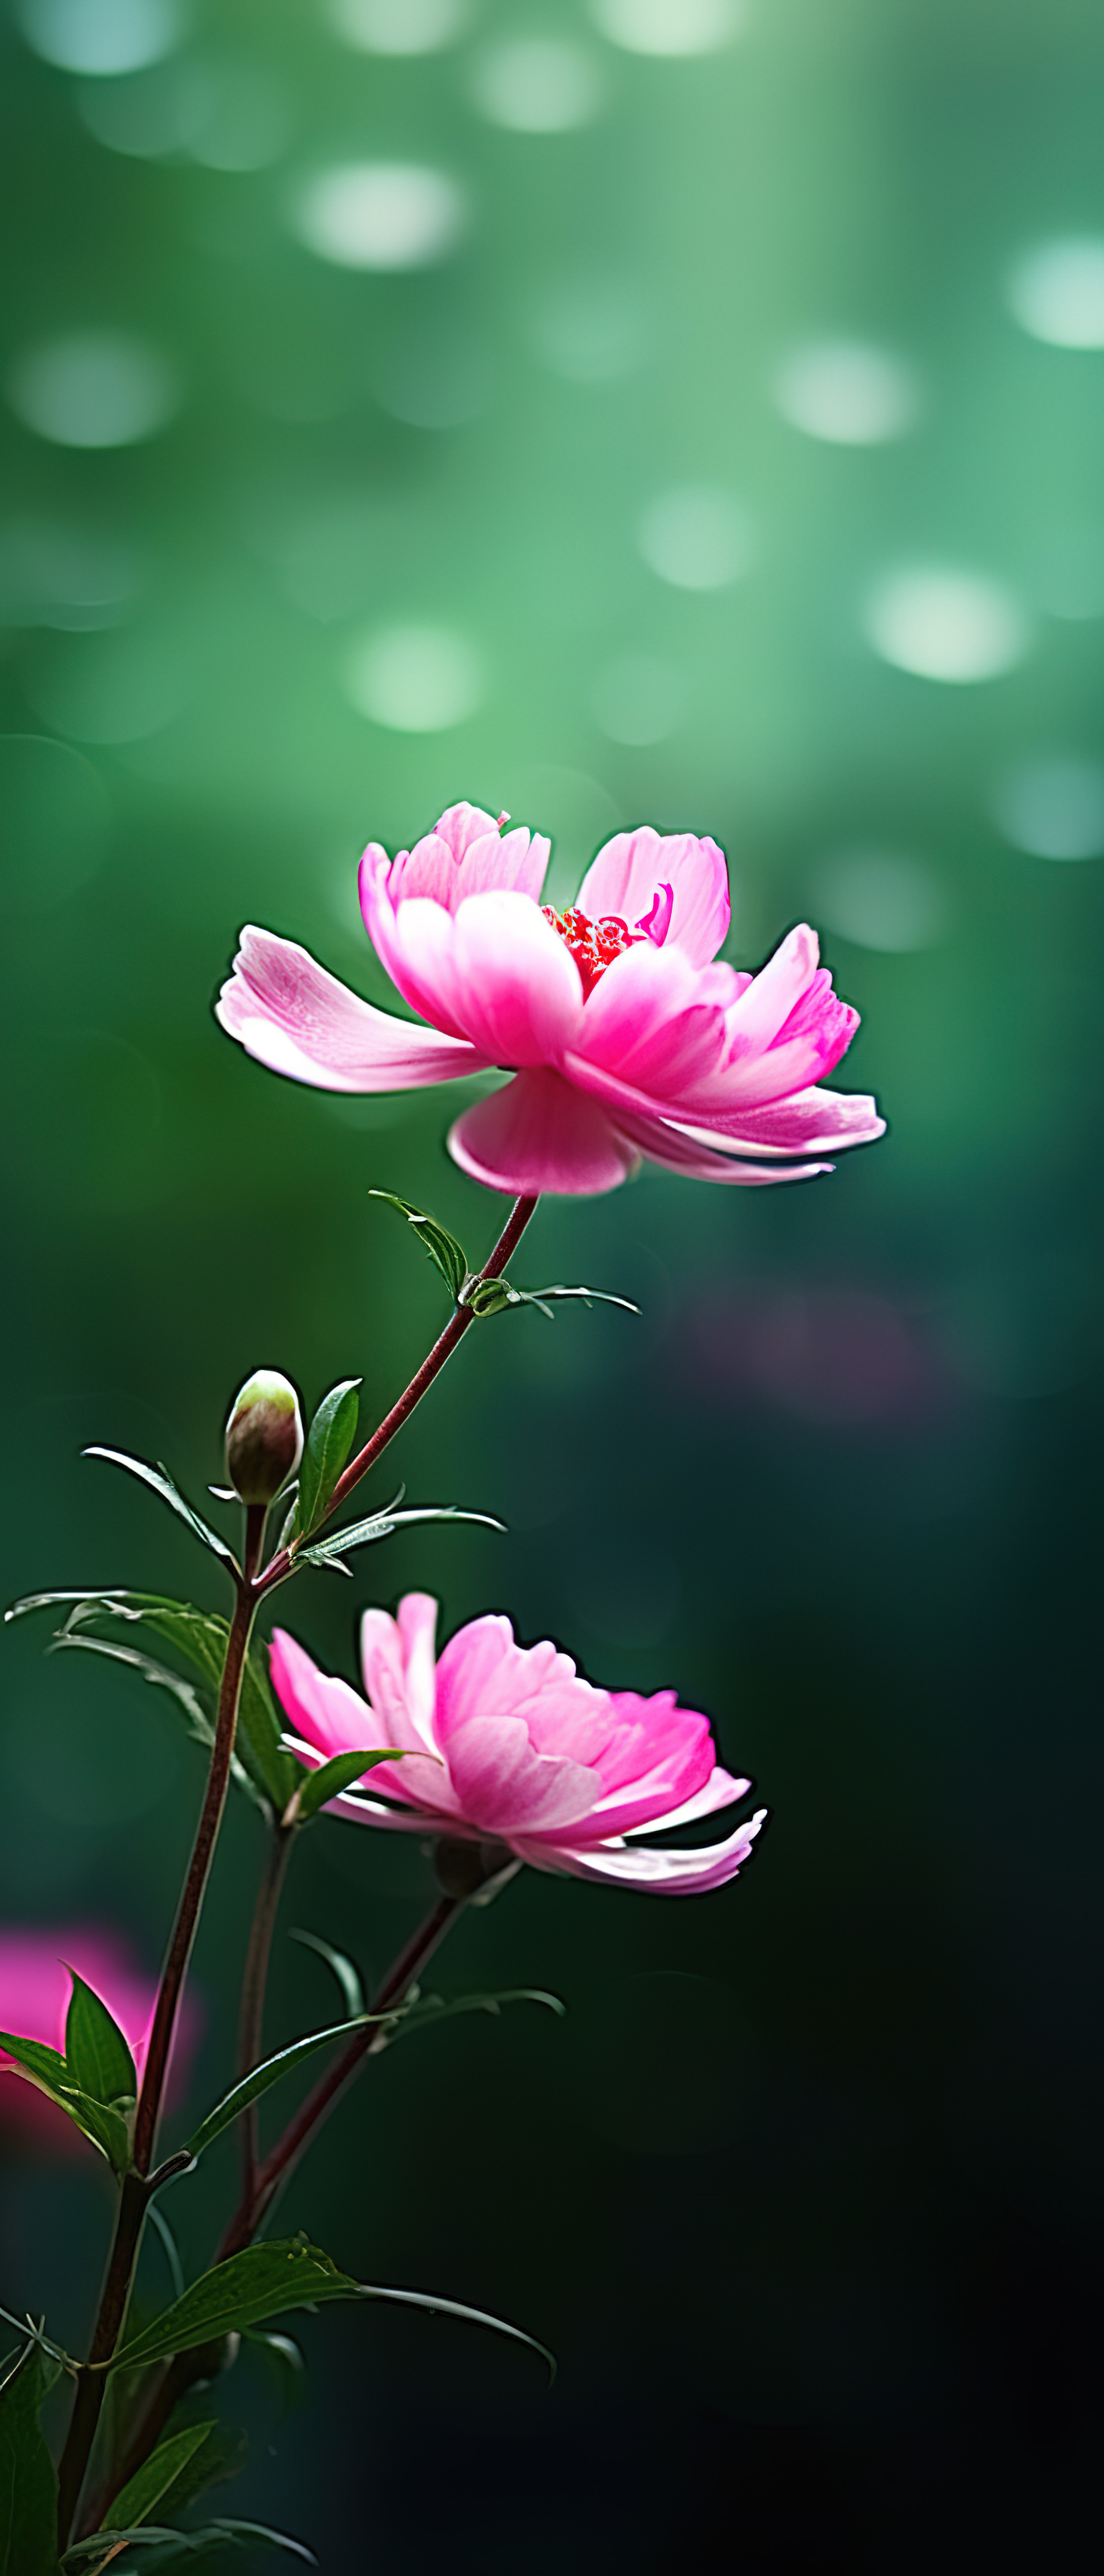 天然池塘中粉红色小花的照片图片